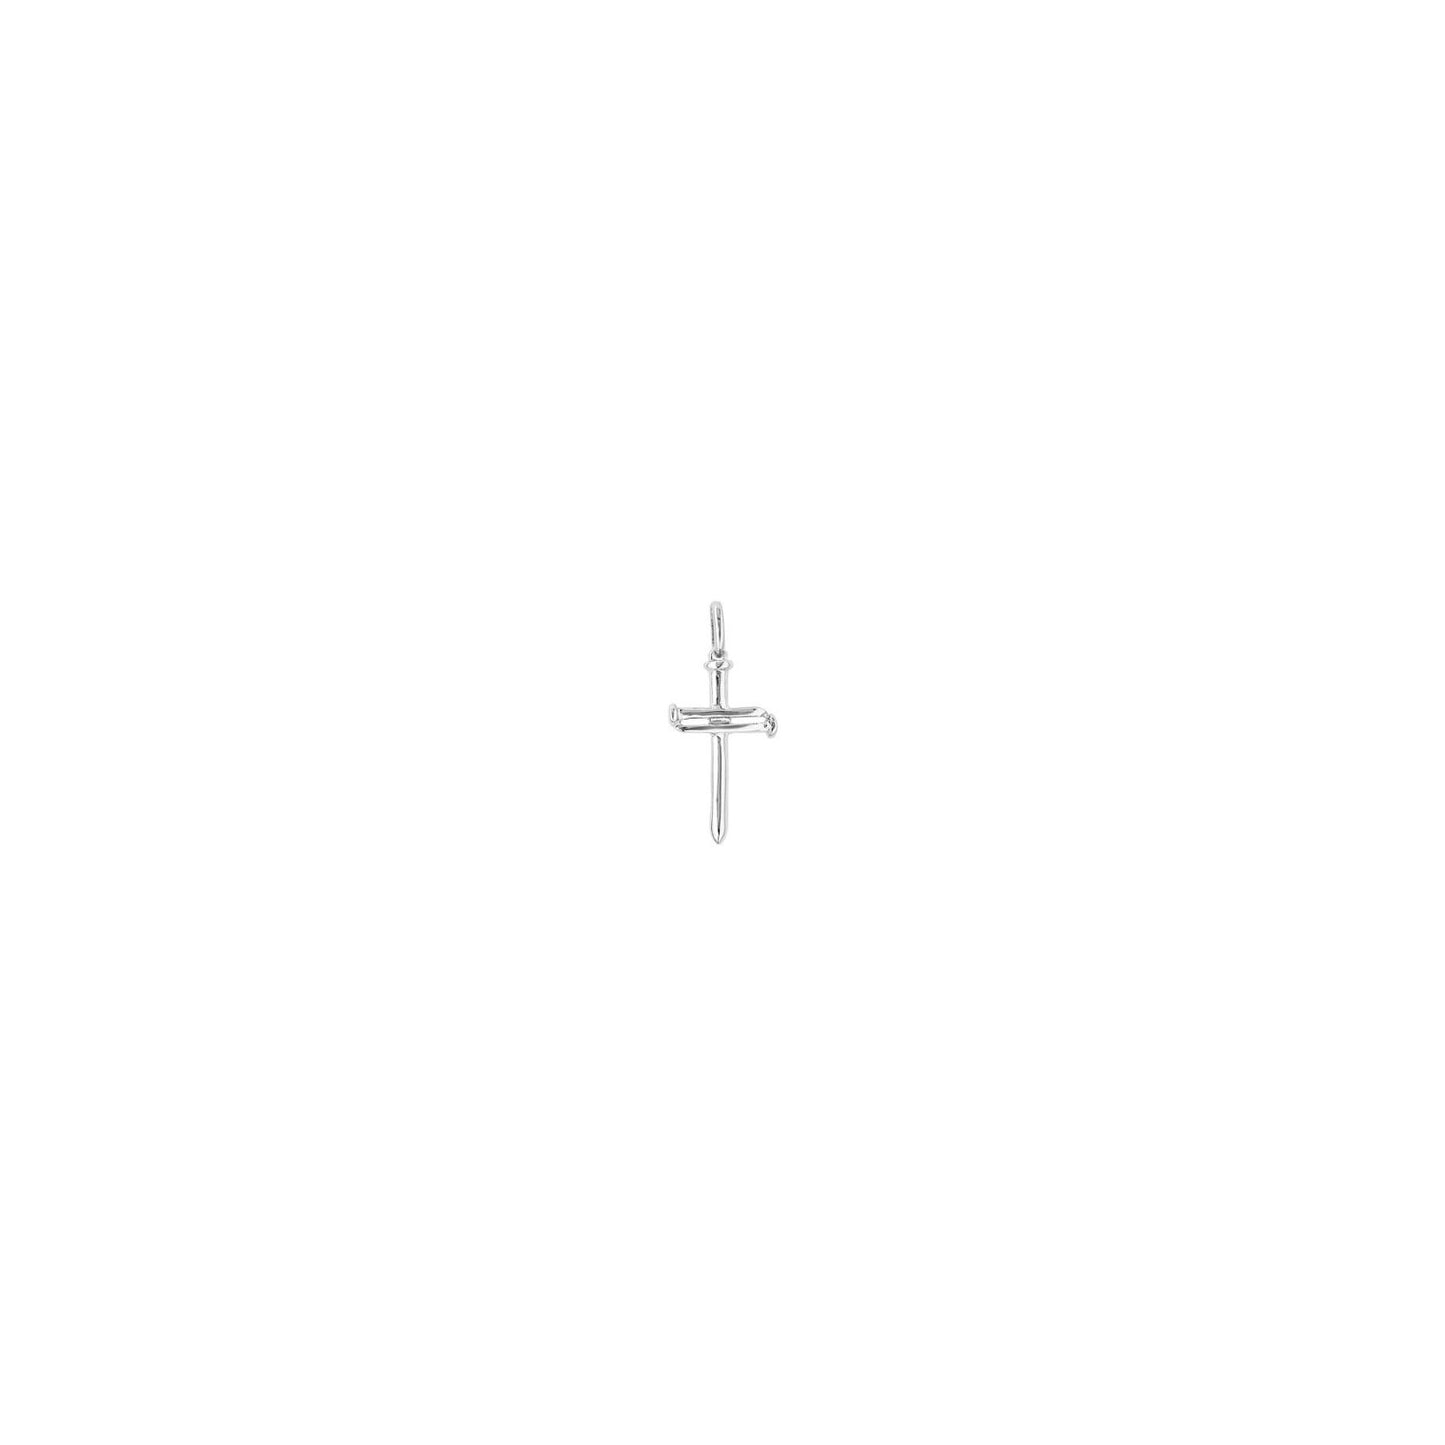 Cruz Mediana (Medium Cross) | Uno de 50 | Luby 